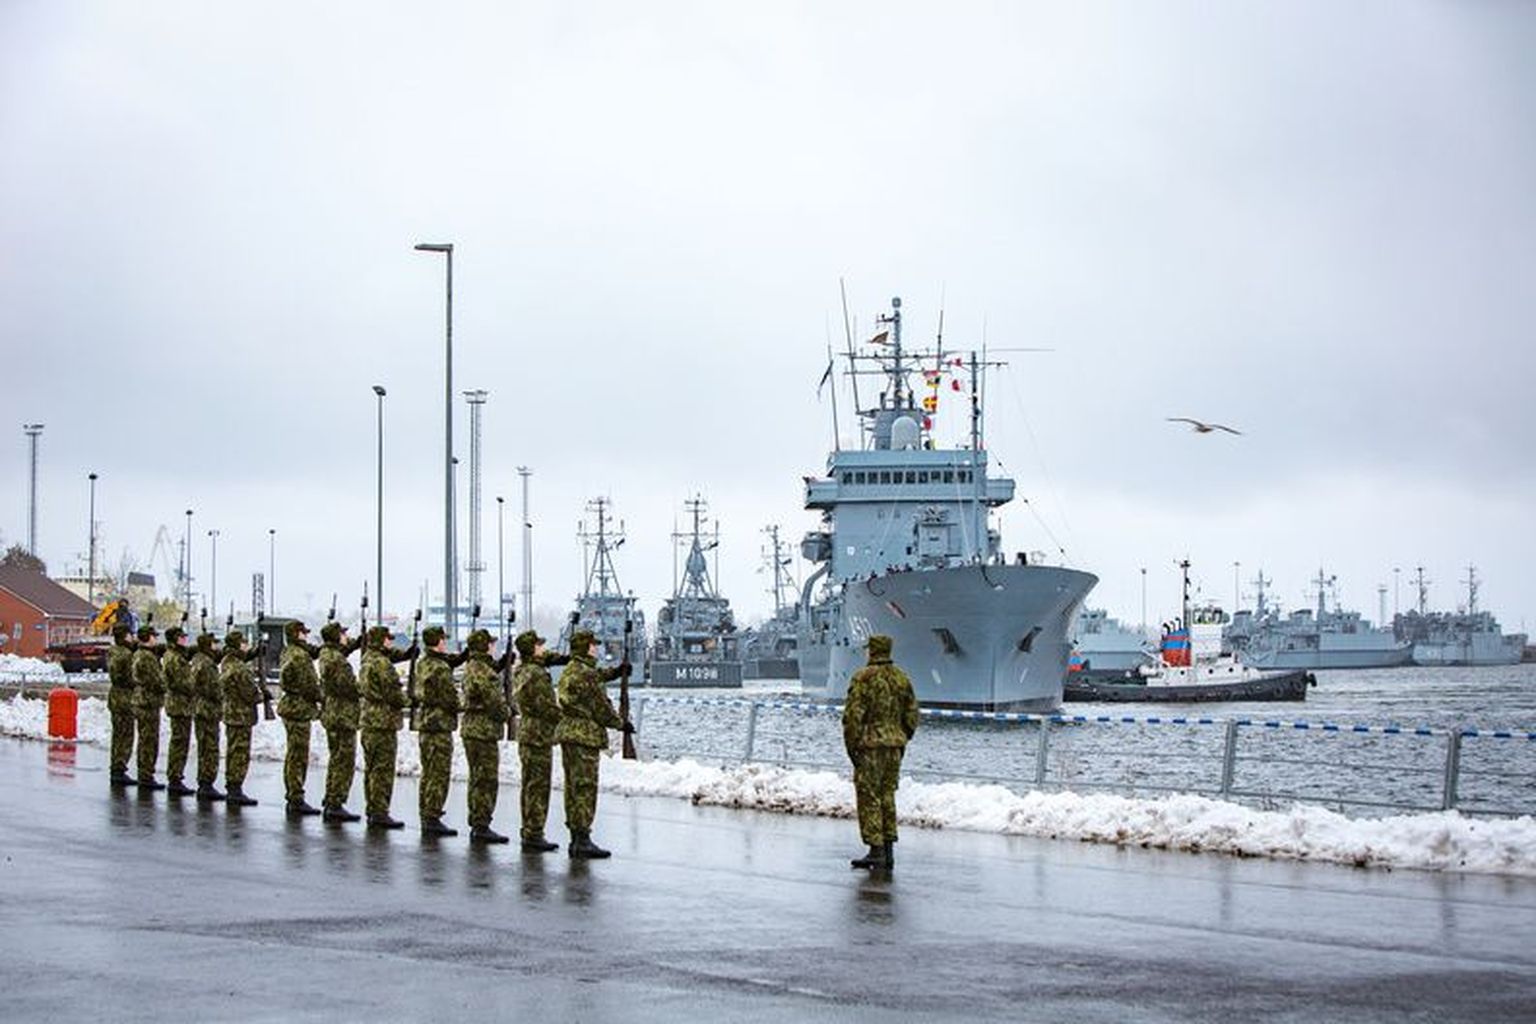 Ajateenijad tervitamas Tallinnasse saabuvat Saksa mereväe miinitõrjeeskaadrit.